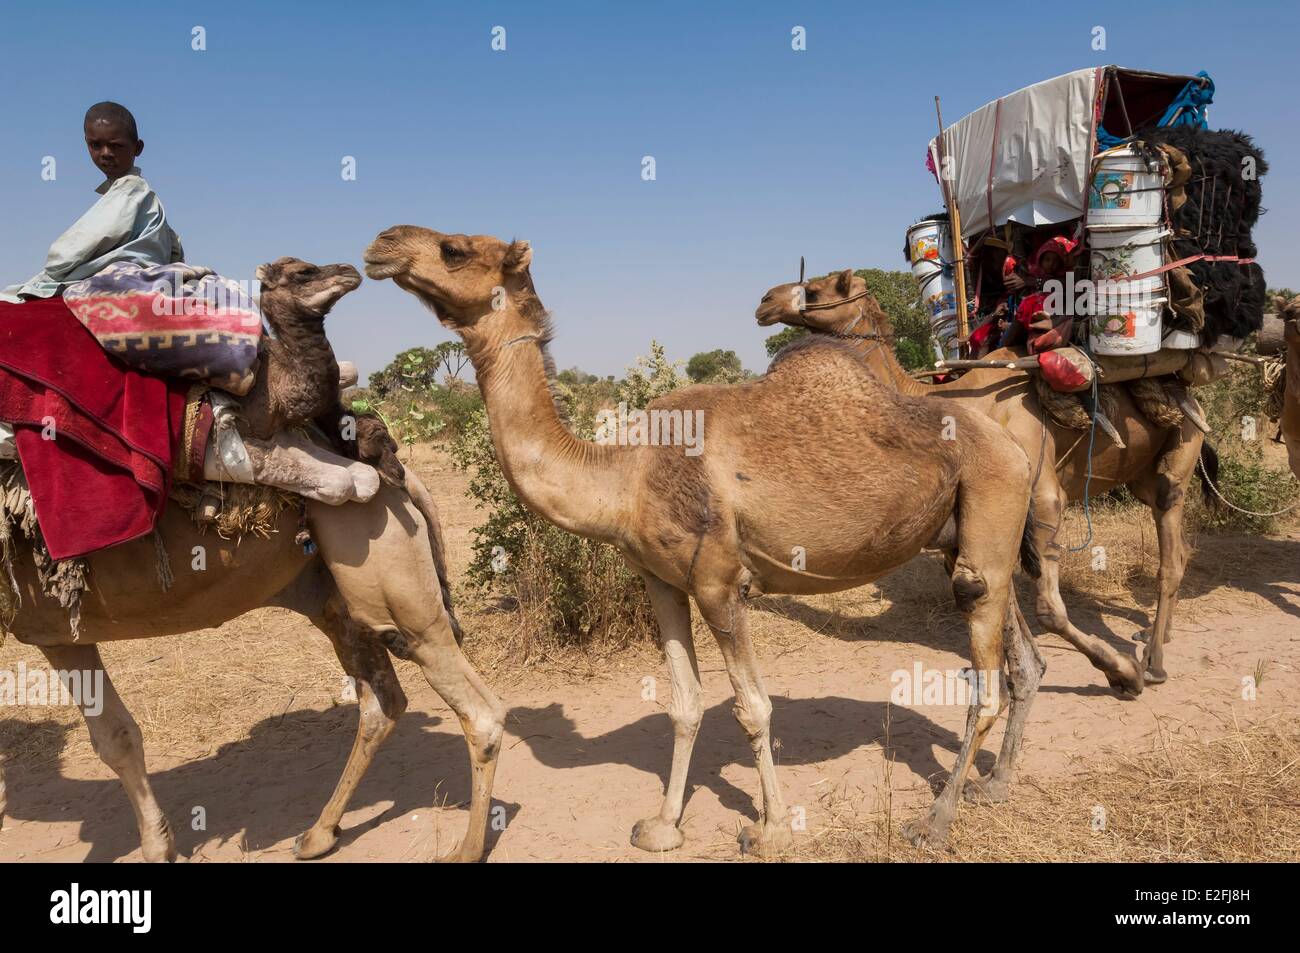 Il Ciad, il Sahel, Madoubou savannah, migrazione dei nomadi arabi, con i loro cammelli Foto Stock